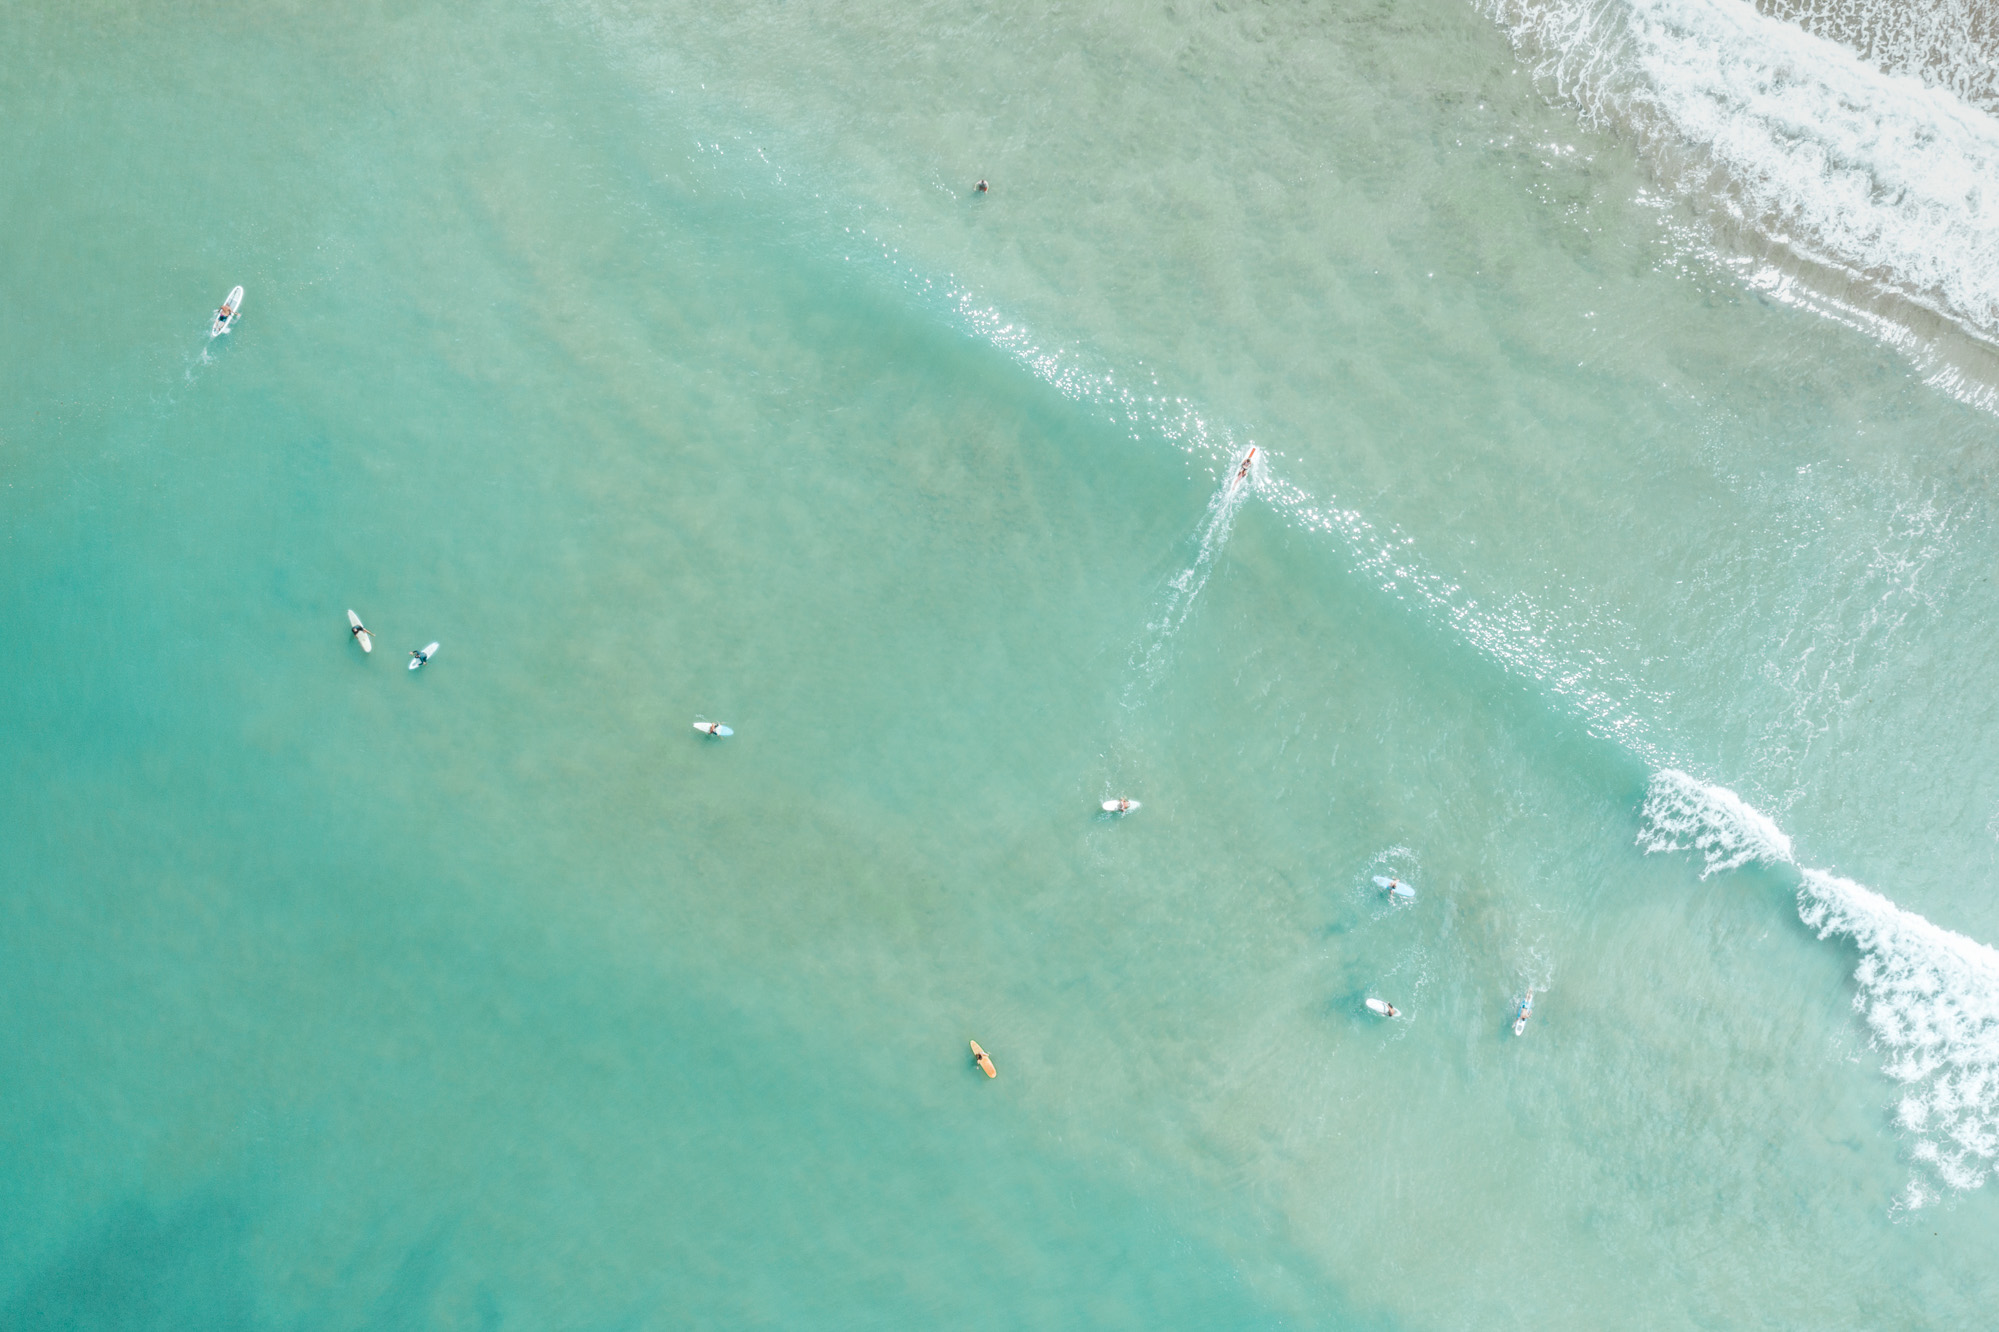 Surfers at Hanalei Bay Beach in Kauai via Find Us Lost